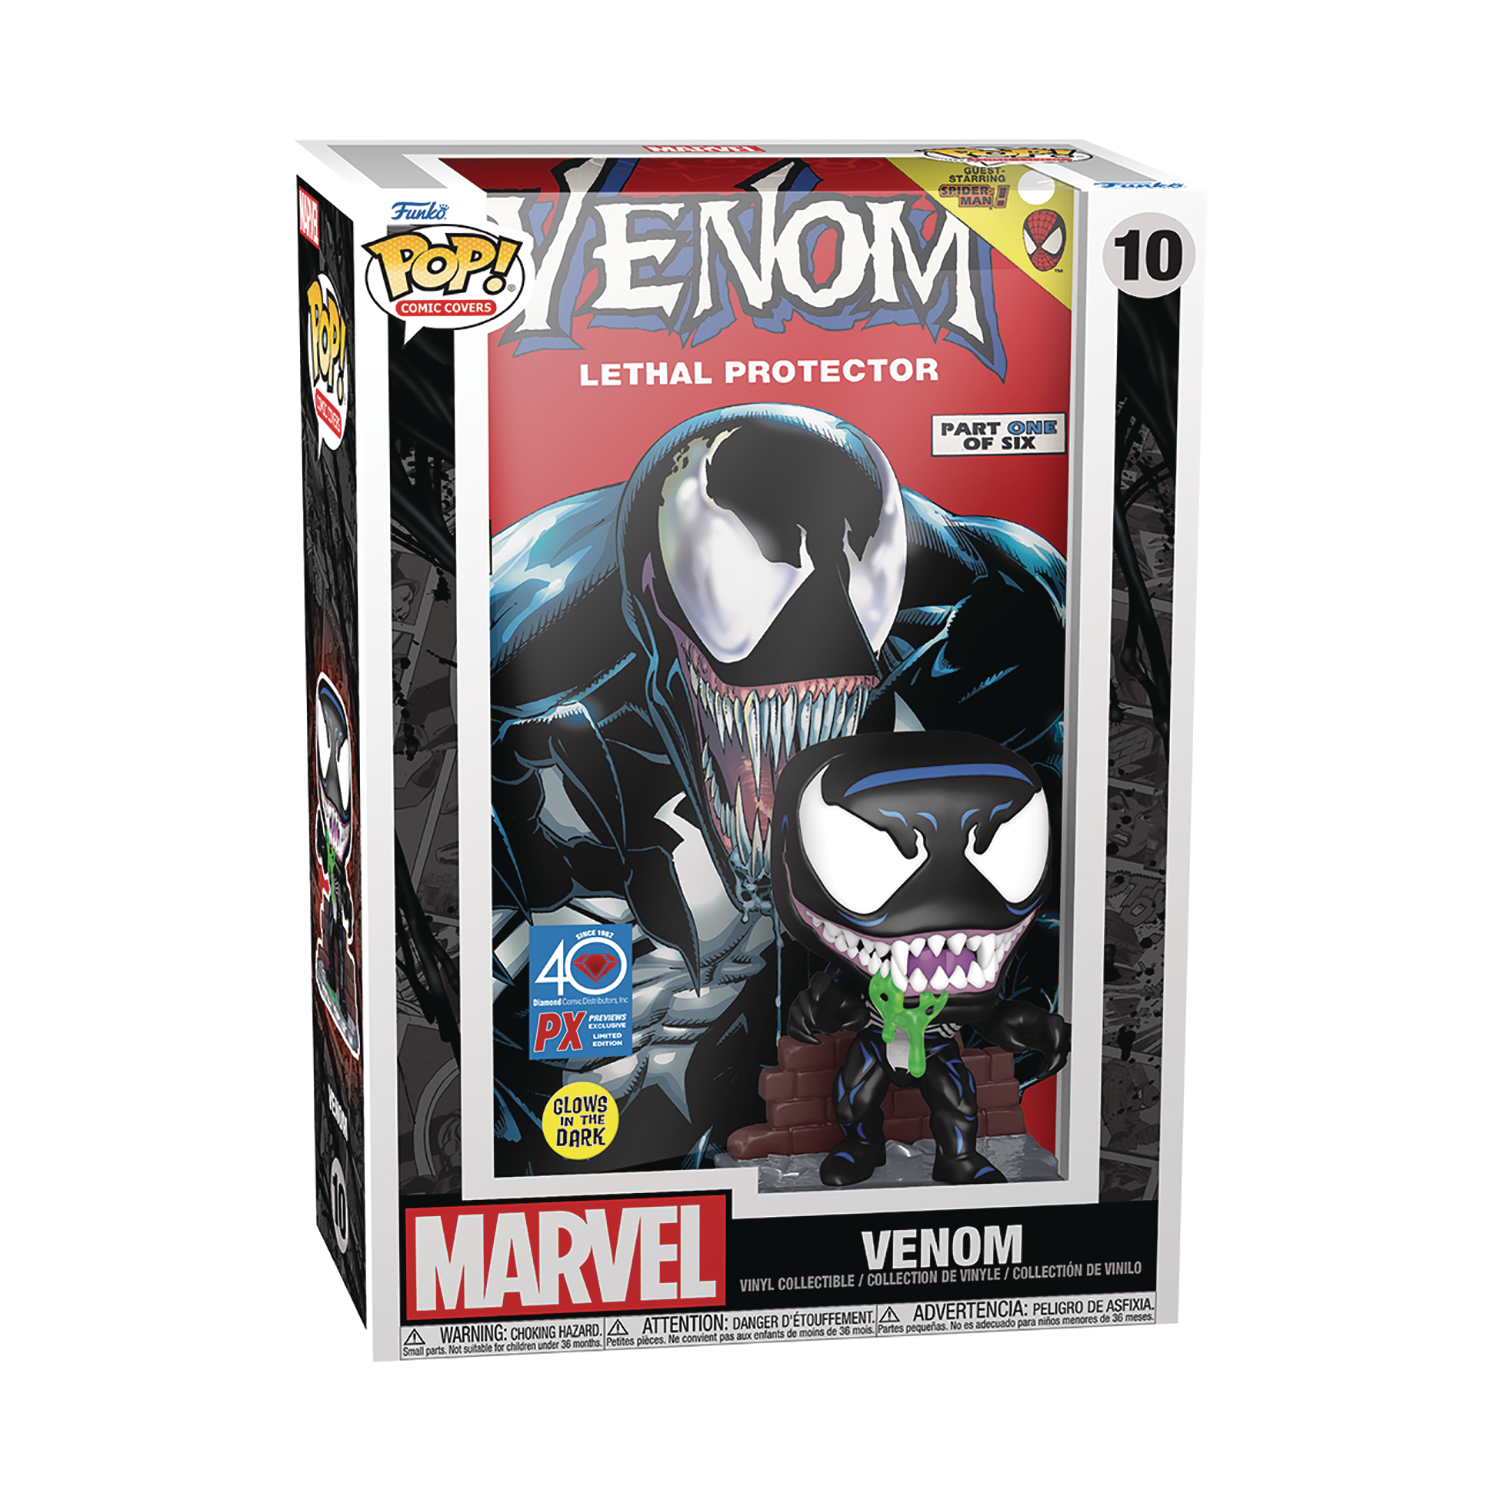 Pop Comic Cover Marvel Venom Lethal Protector Px Glow-In-Dark